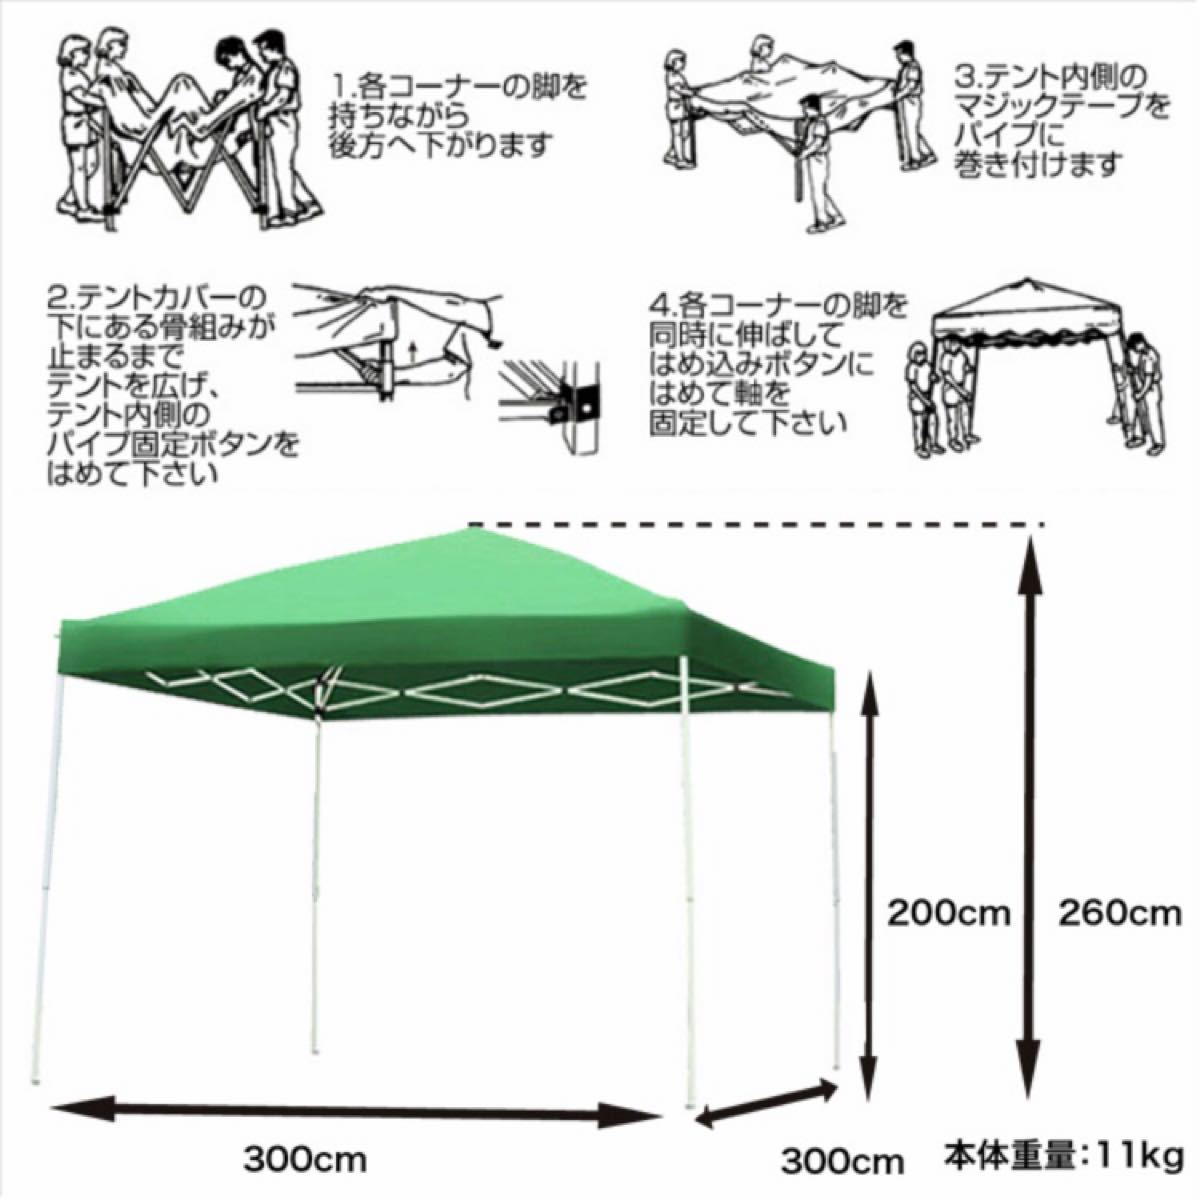 タープテント 【緑】 3×3m ワンタッチ UV加工 専用バッグ付 キャンプ